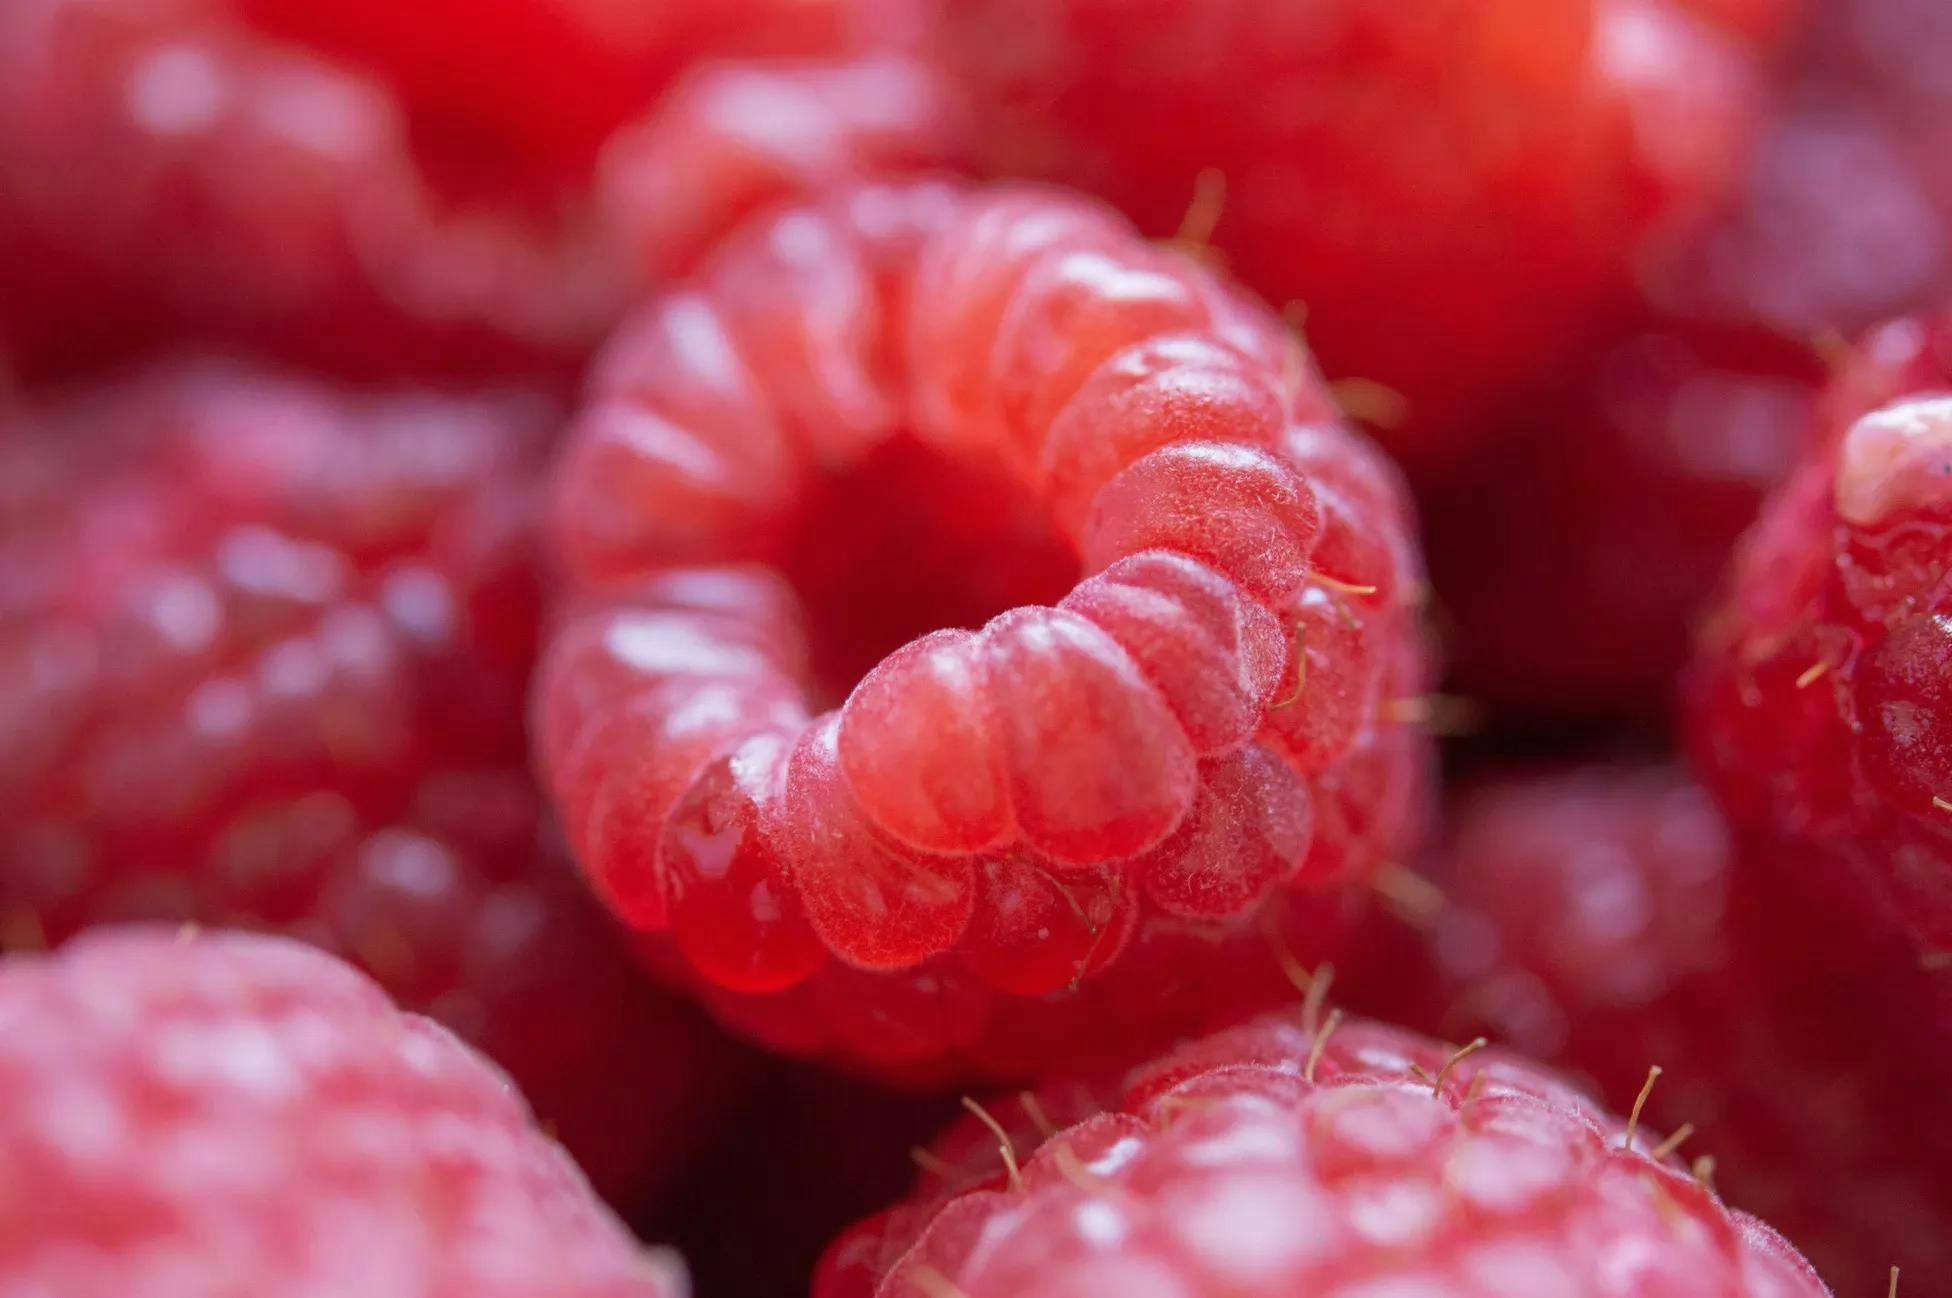 A photo of raspberries